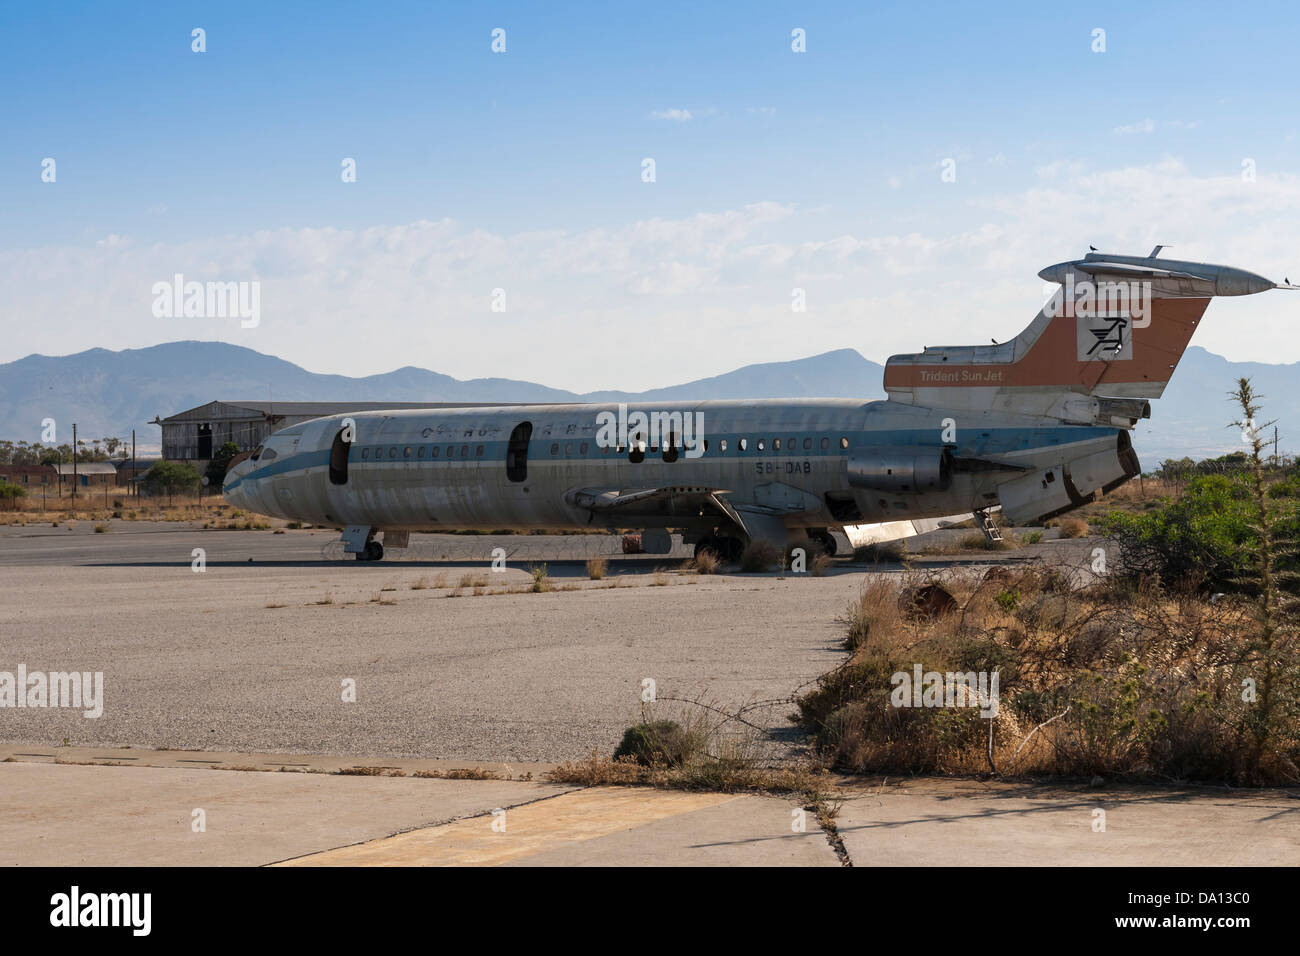 Eine Hawker Siddeley Flugzeug während Invasion Zyperns durch türkische Truppen zerstört. UN-Pufferzone, Nikosia, Zypern. Stockfoto